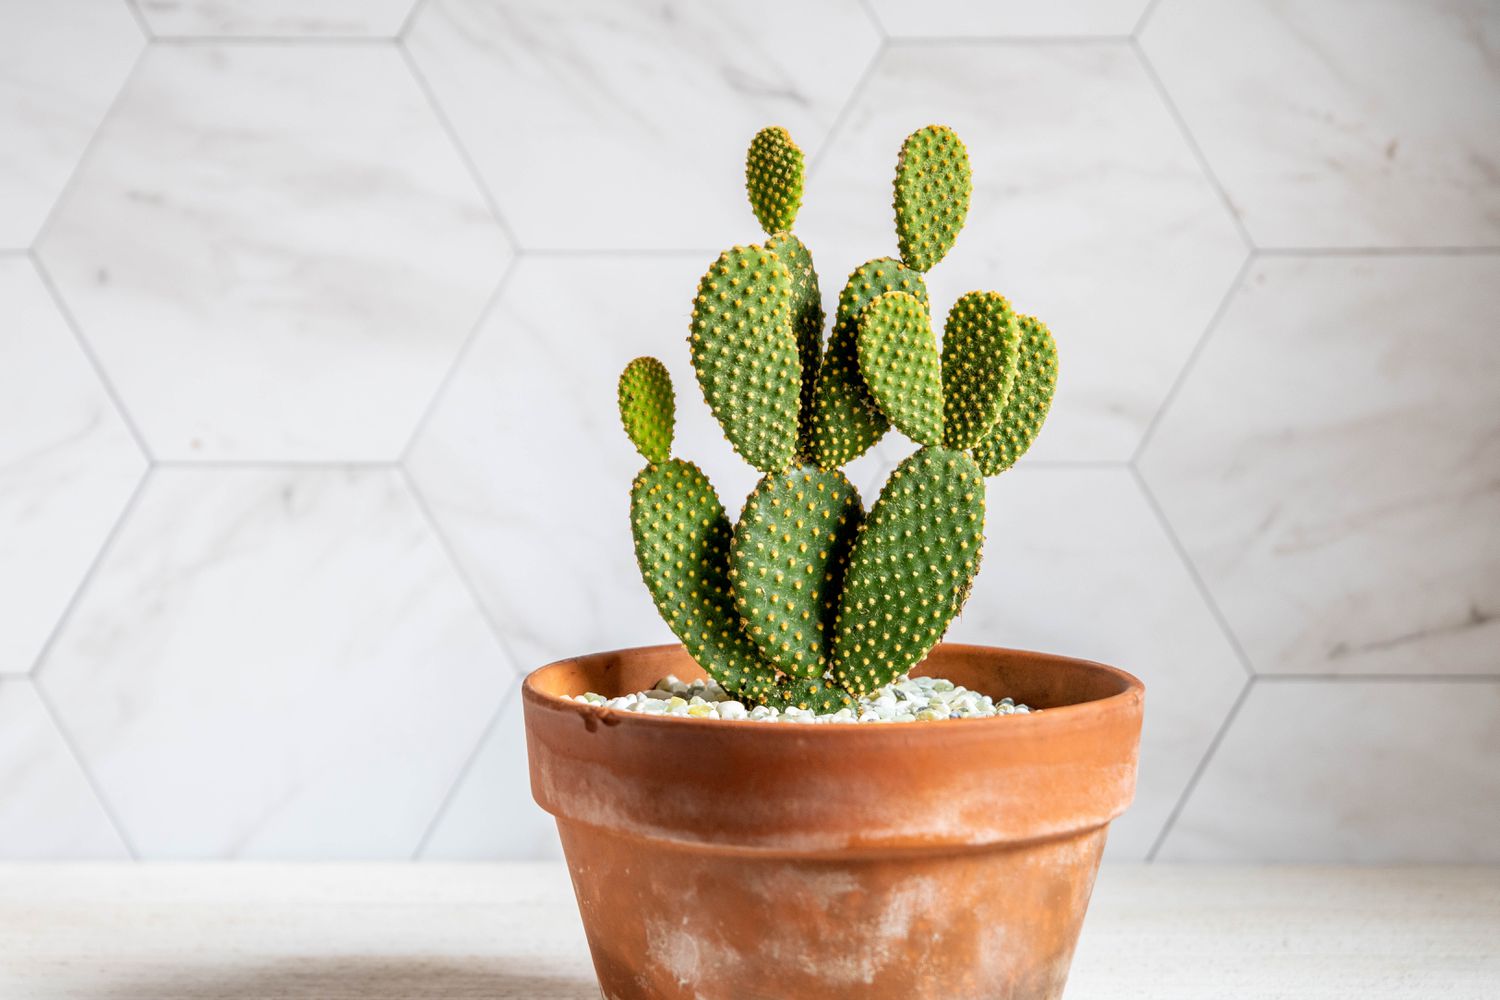 Hasenohr-Kaktus im Terrakotta-Topf mit runden Blattpolstern mit kleinen gelben Punkten